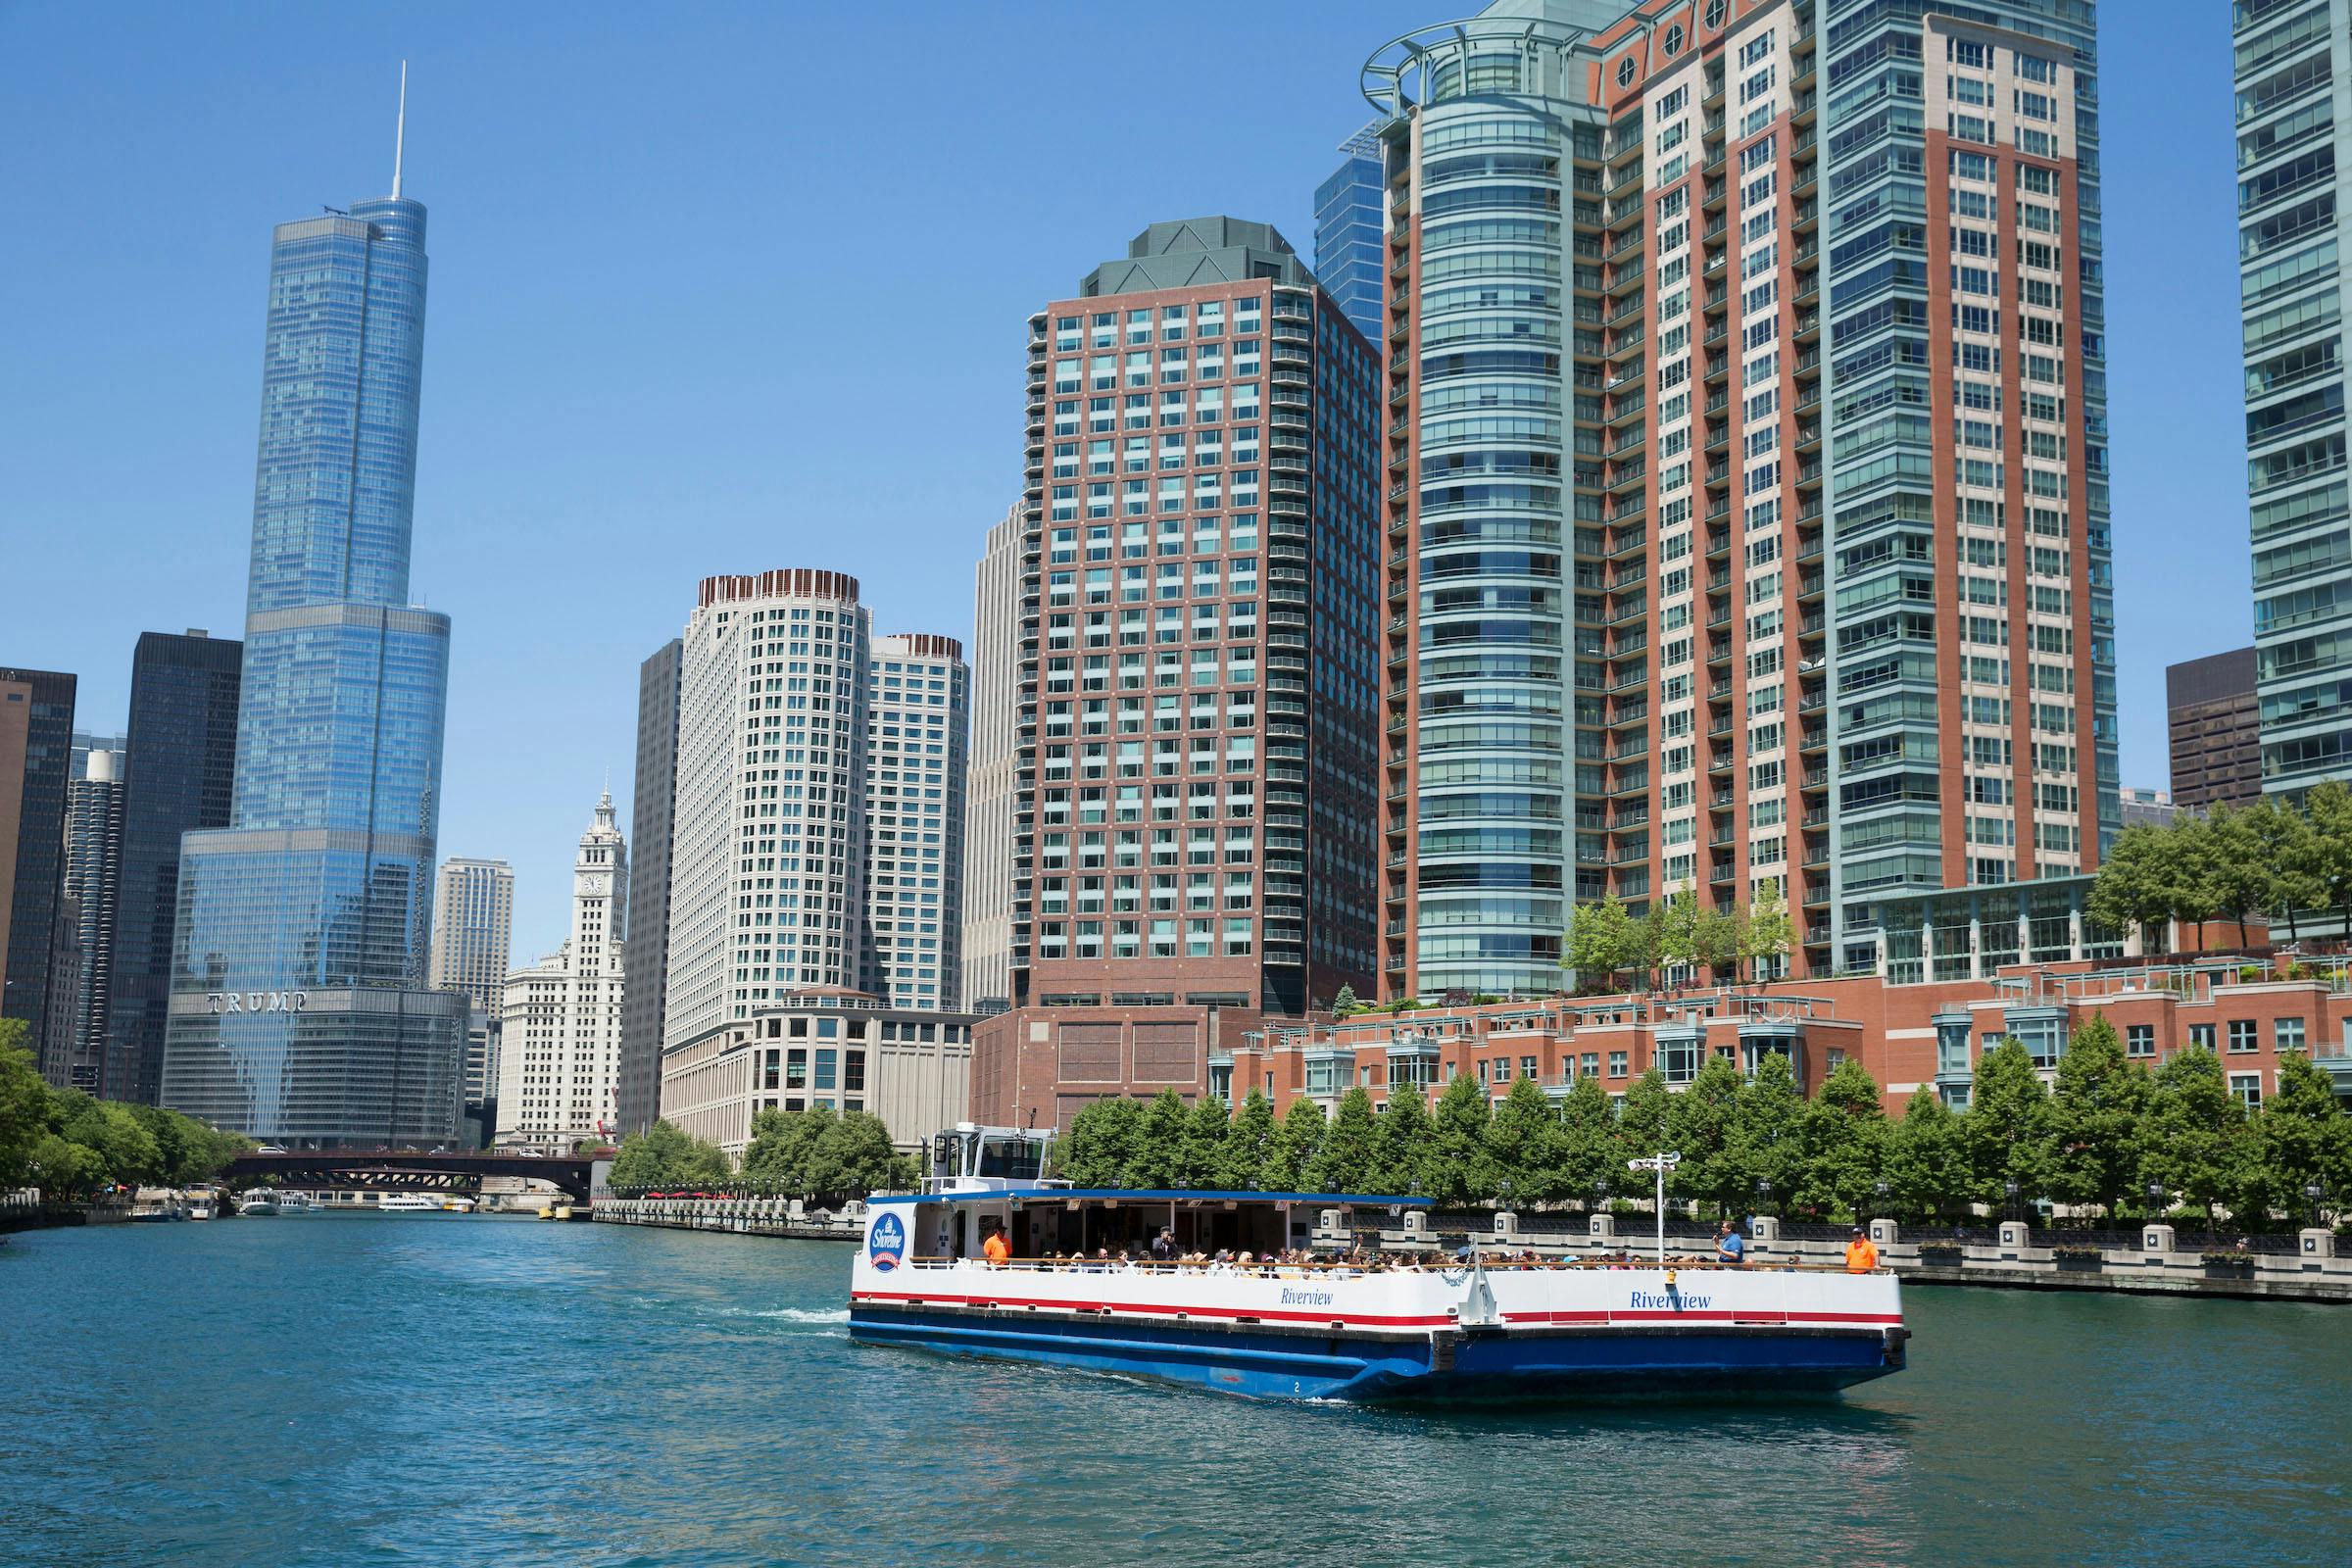 Architectuurcruise op de Chicago River vanaf Navy Pier